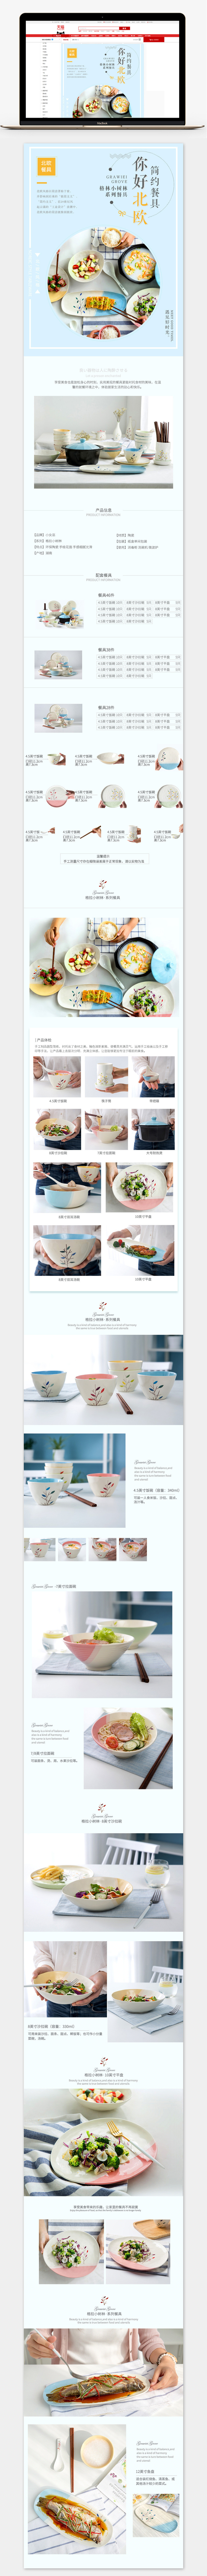 淘宝美工y173529简约日系风格餐具详情页作品